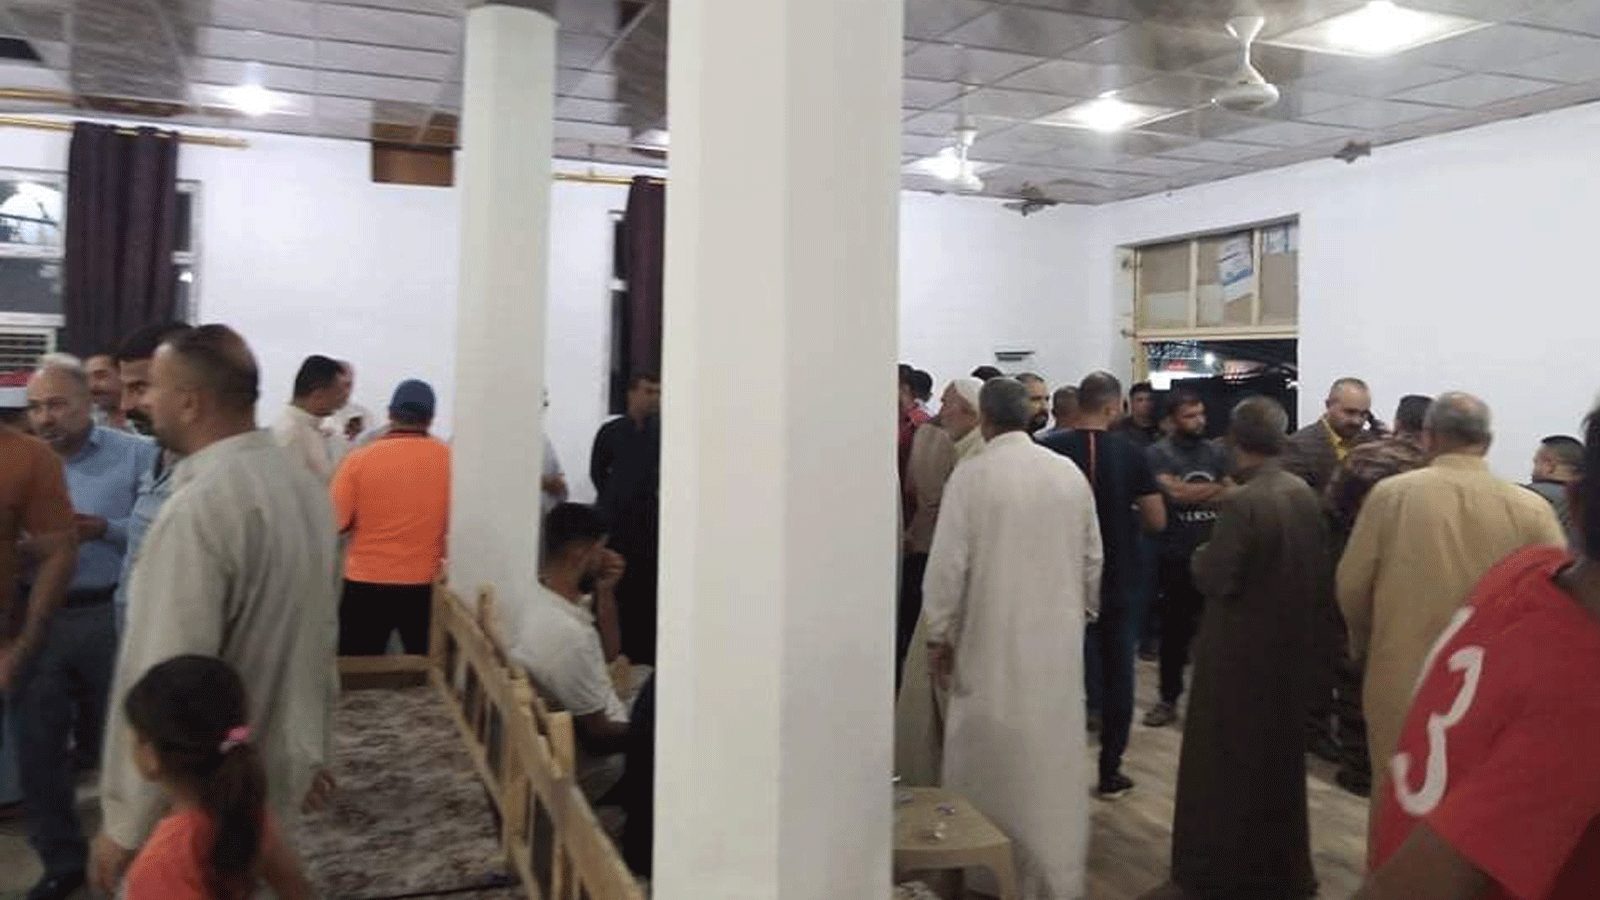 نازحون عراقية من محافظة ديالى الى مركزها بعقوبة اليوم الخميس حيث فتحت المساجد لايوائهم (تويتر)